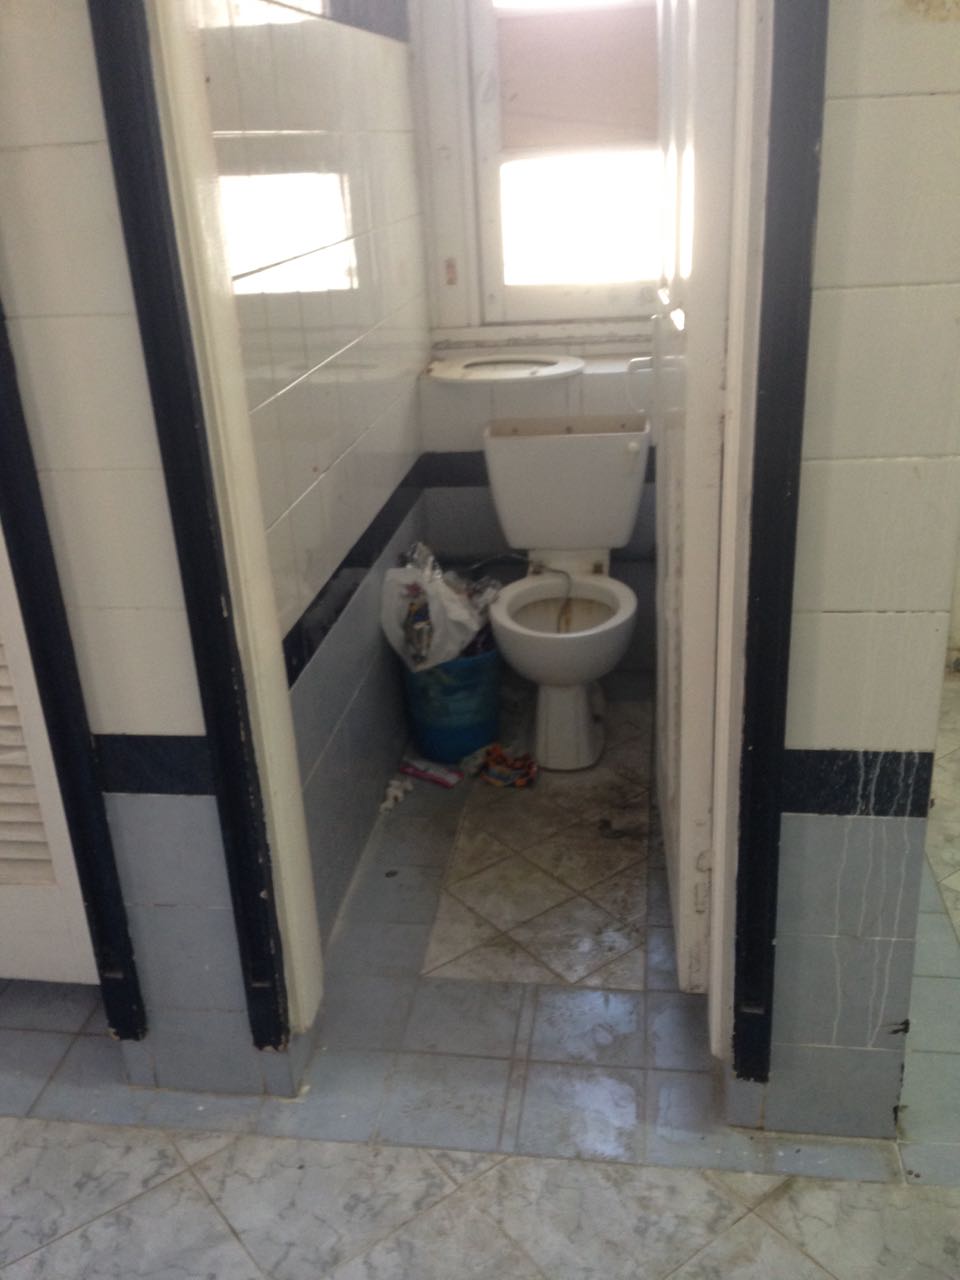 صورة أخرى توضح سوء نظافة الحمامات بالإسكندرية